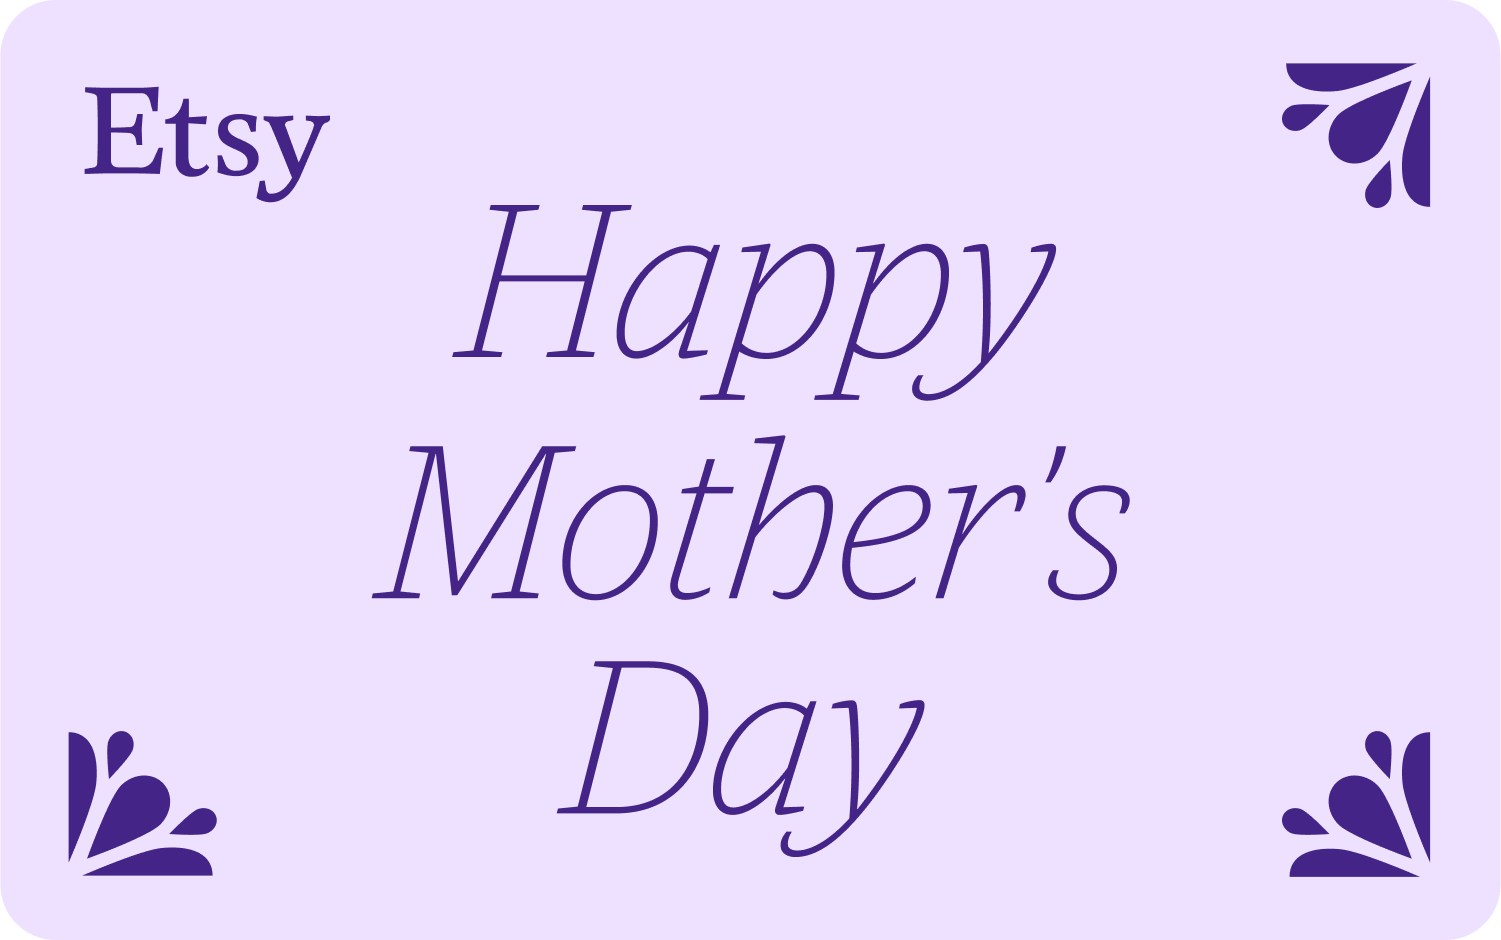 ラベンダーの背景に、右上隅が紫色の画面下に花があり、左上隅に Etsy のロゴが入り、紫色のフォントで中央に「母の日おめでととう」と書いてあるイラスト